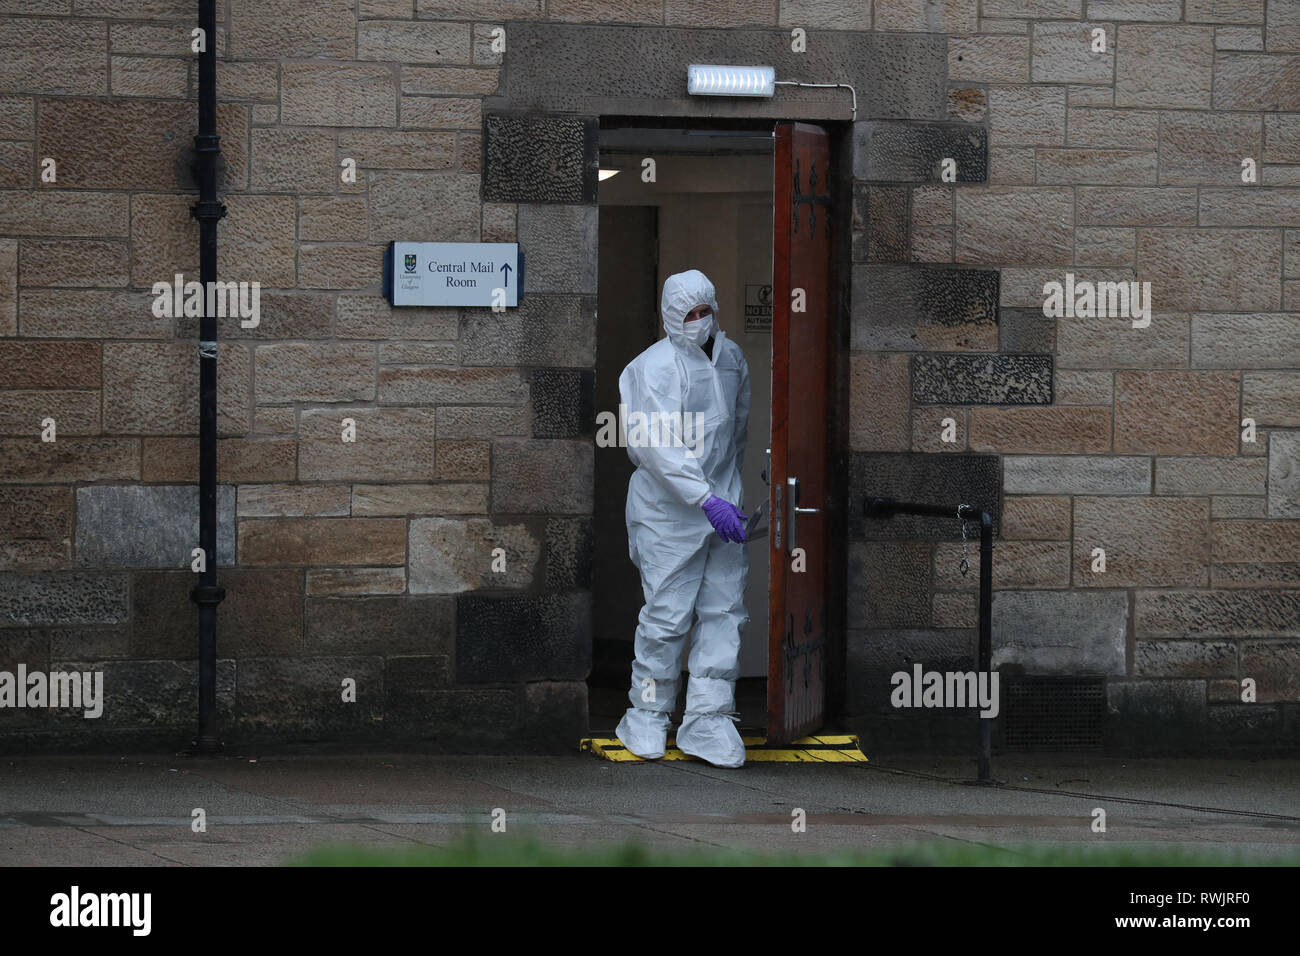 Corps royal de neutralisation des bombes de la logistique du personnel quittent la salle du courrier de l'Université de Glasgow, où un colis suspect a été trouvé conduisant à l'évacuation de l'immeuble. Banque D'Images